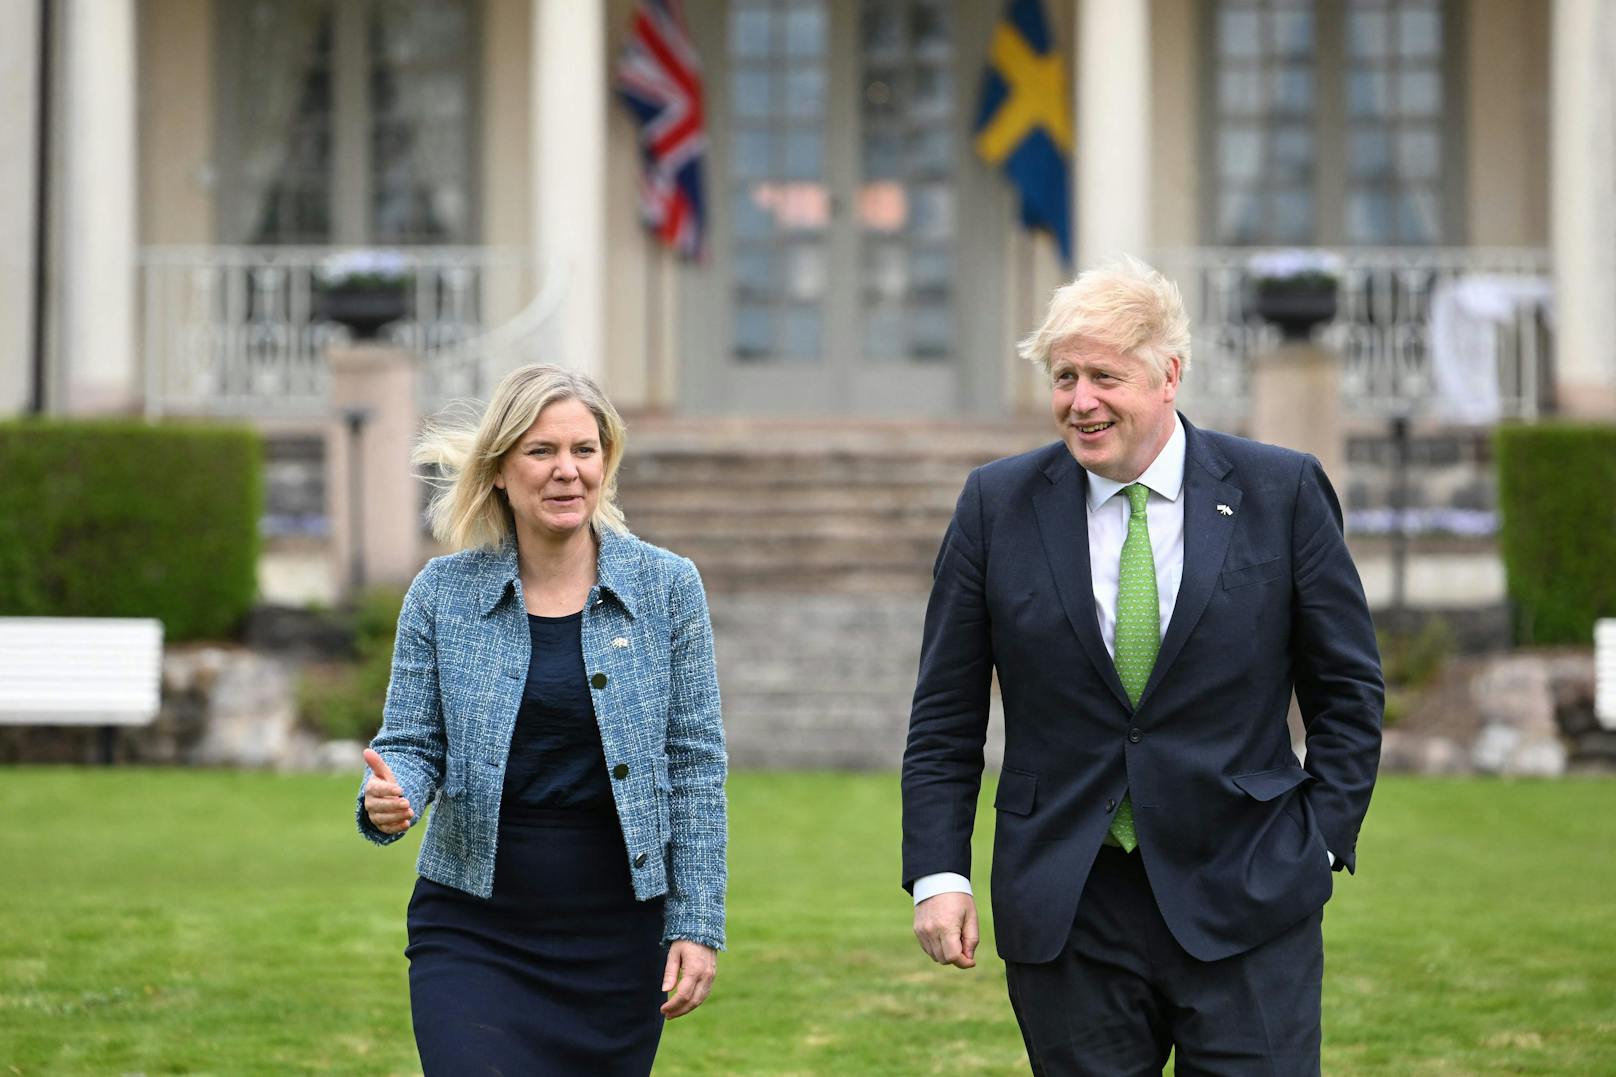 Der britische Premierminister Boris Johnson und die schwedische Premierministerin Magdalena Andersson machen einen Spaziergang, nachdem sie am&nbsp; in der Sommerresidenz des schwedischen Premierministers in Harpsund, eine Erklärung der politischen Solidarität unterzeichnet haben.